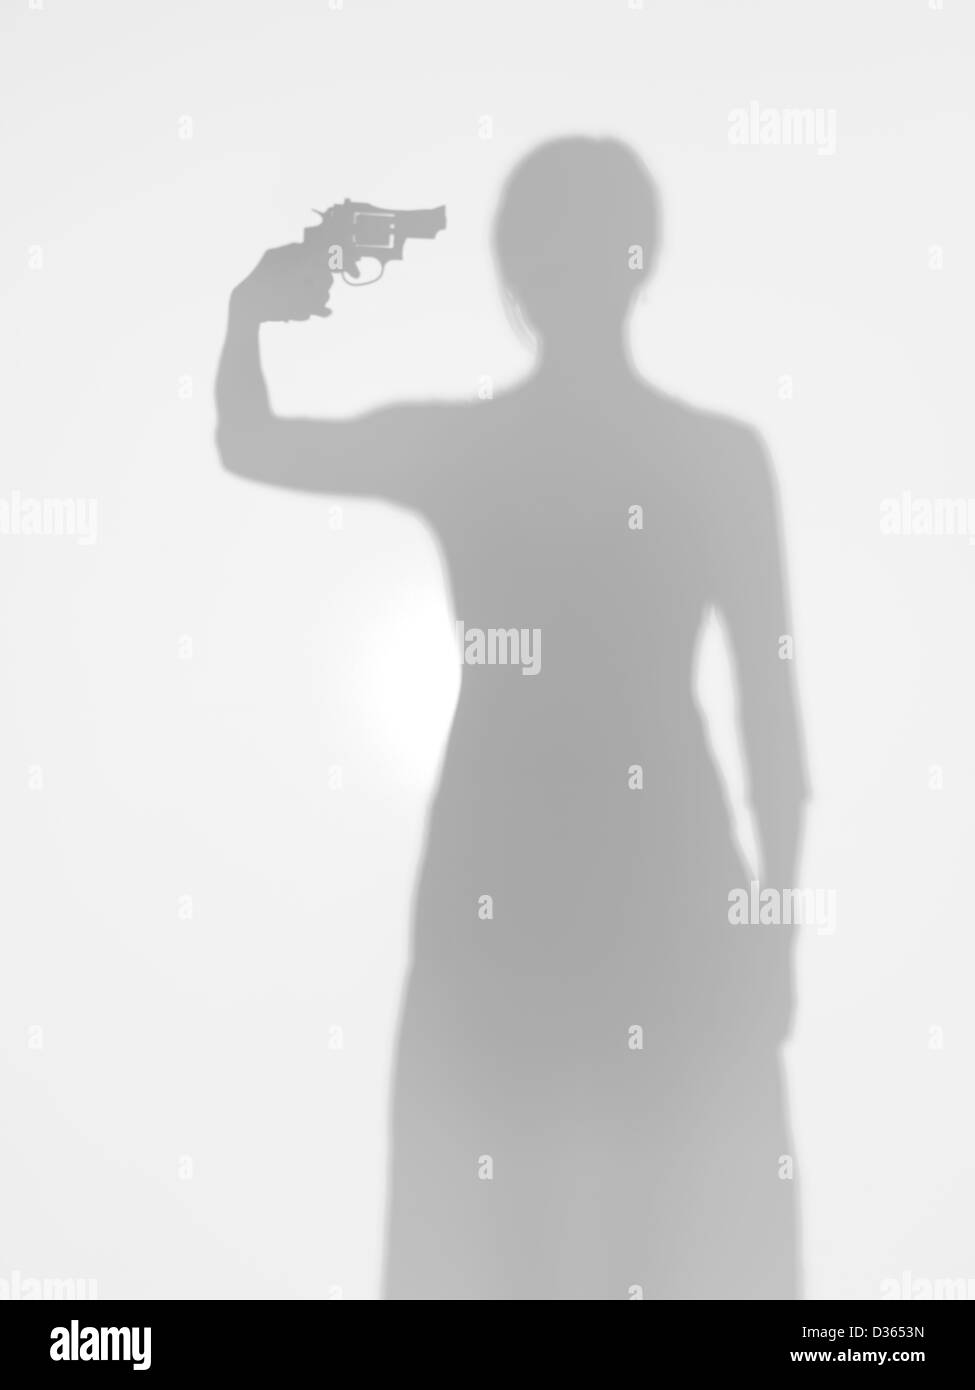 Giovane corpo femmina silhouette in piedi e puntando una pistola verso la sua testa, dietro una superficie diffusa Foto Stock